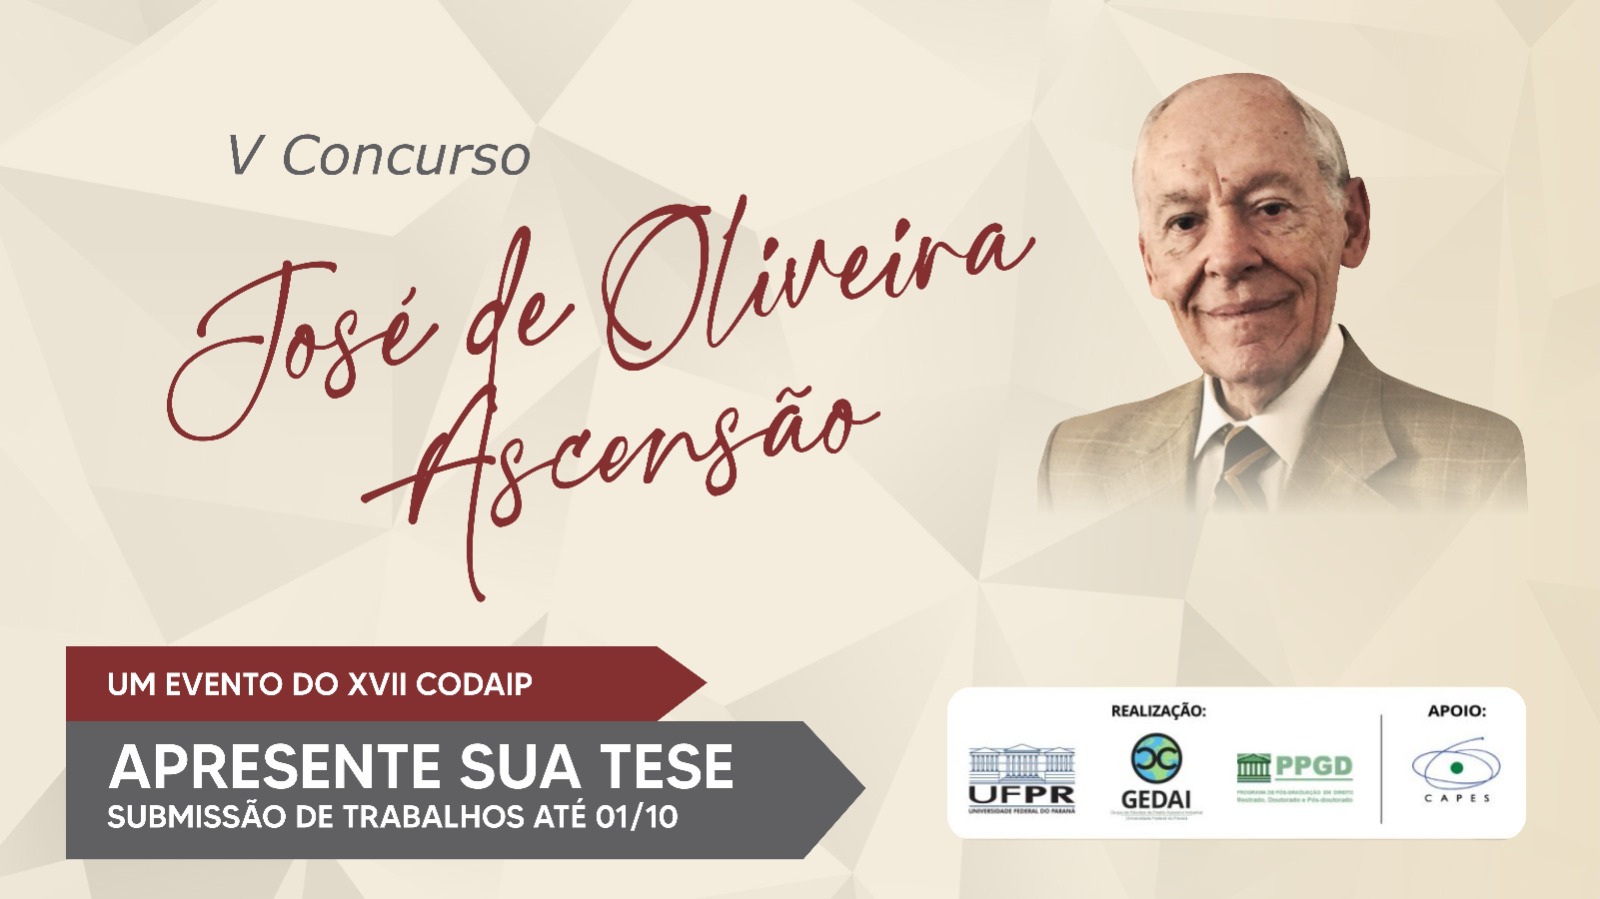 V Concurso Prof. Dr. José de Oliveira Ascensão – Apresente sua tese no CODAIP